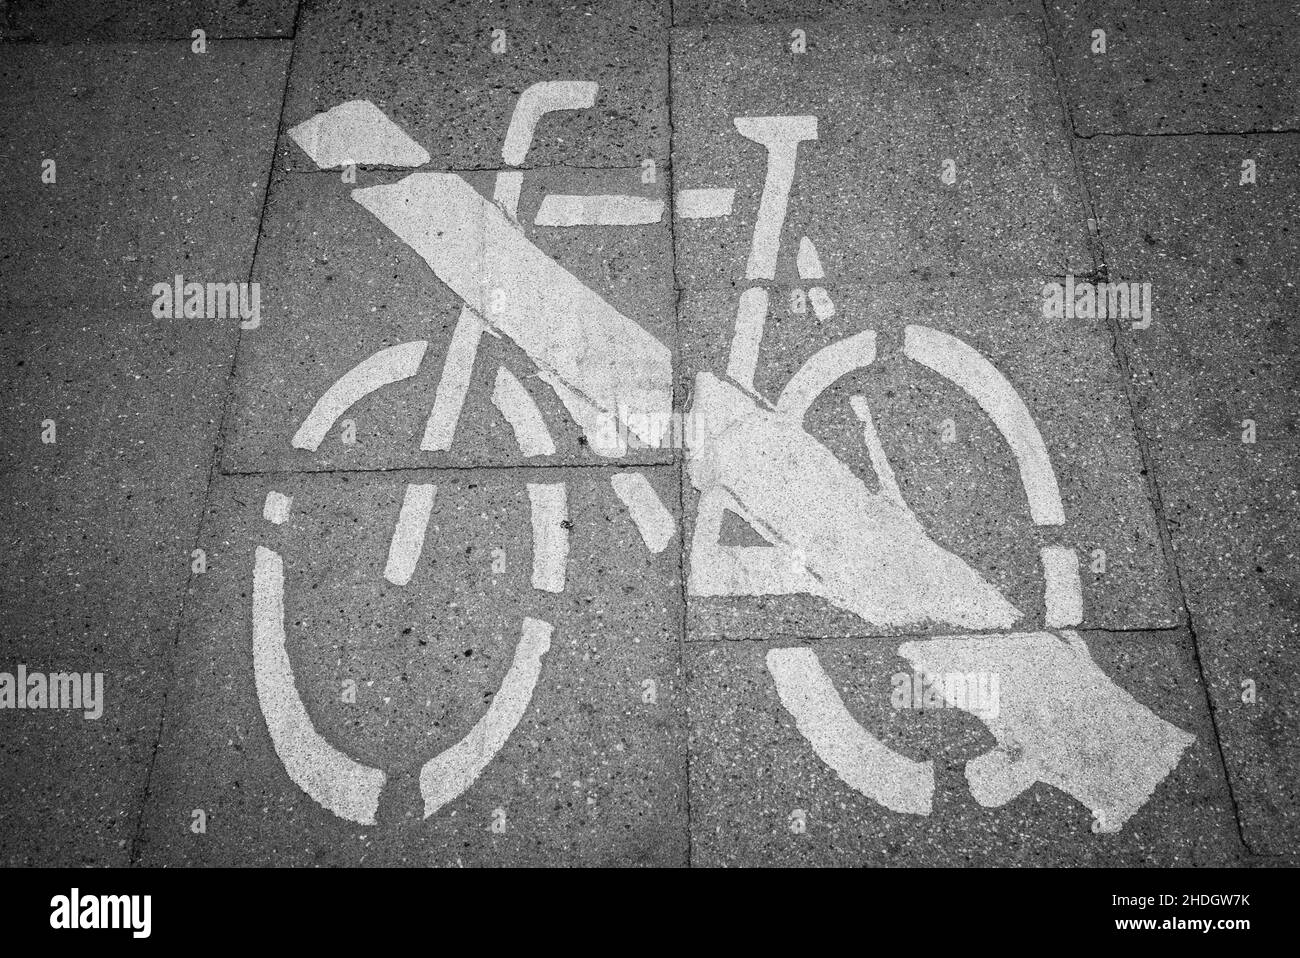 ciclismo, pittogramma, non inserire segni, pittogrammi, non inserire segni, divieto Foto Stock